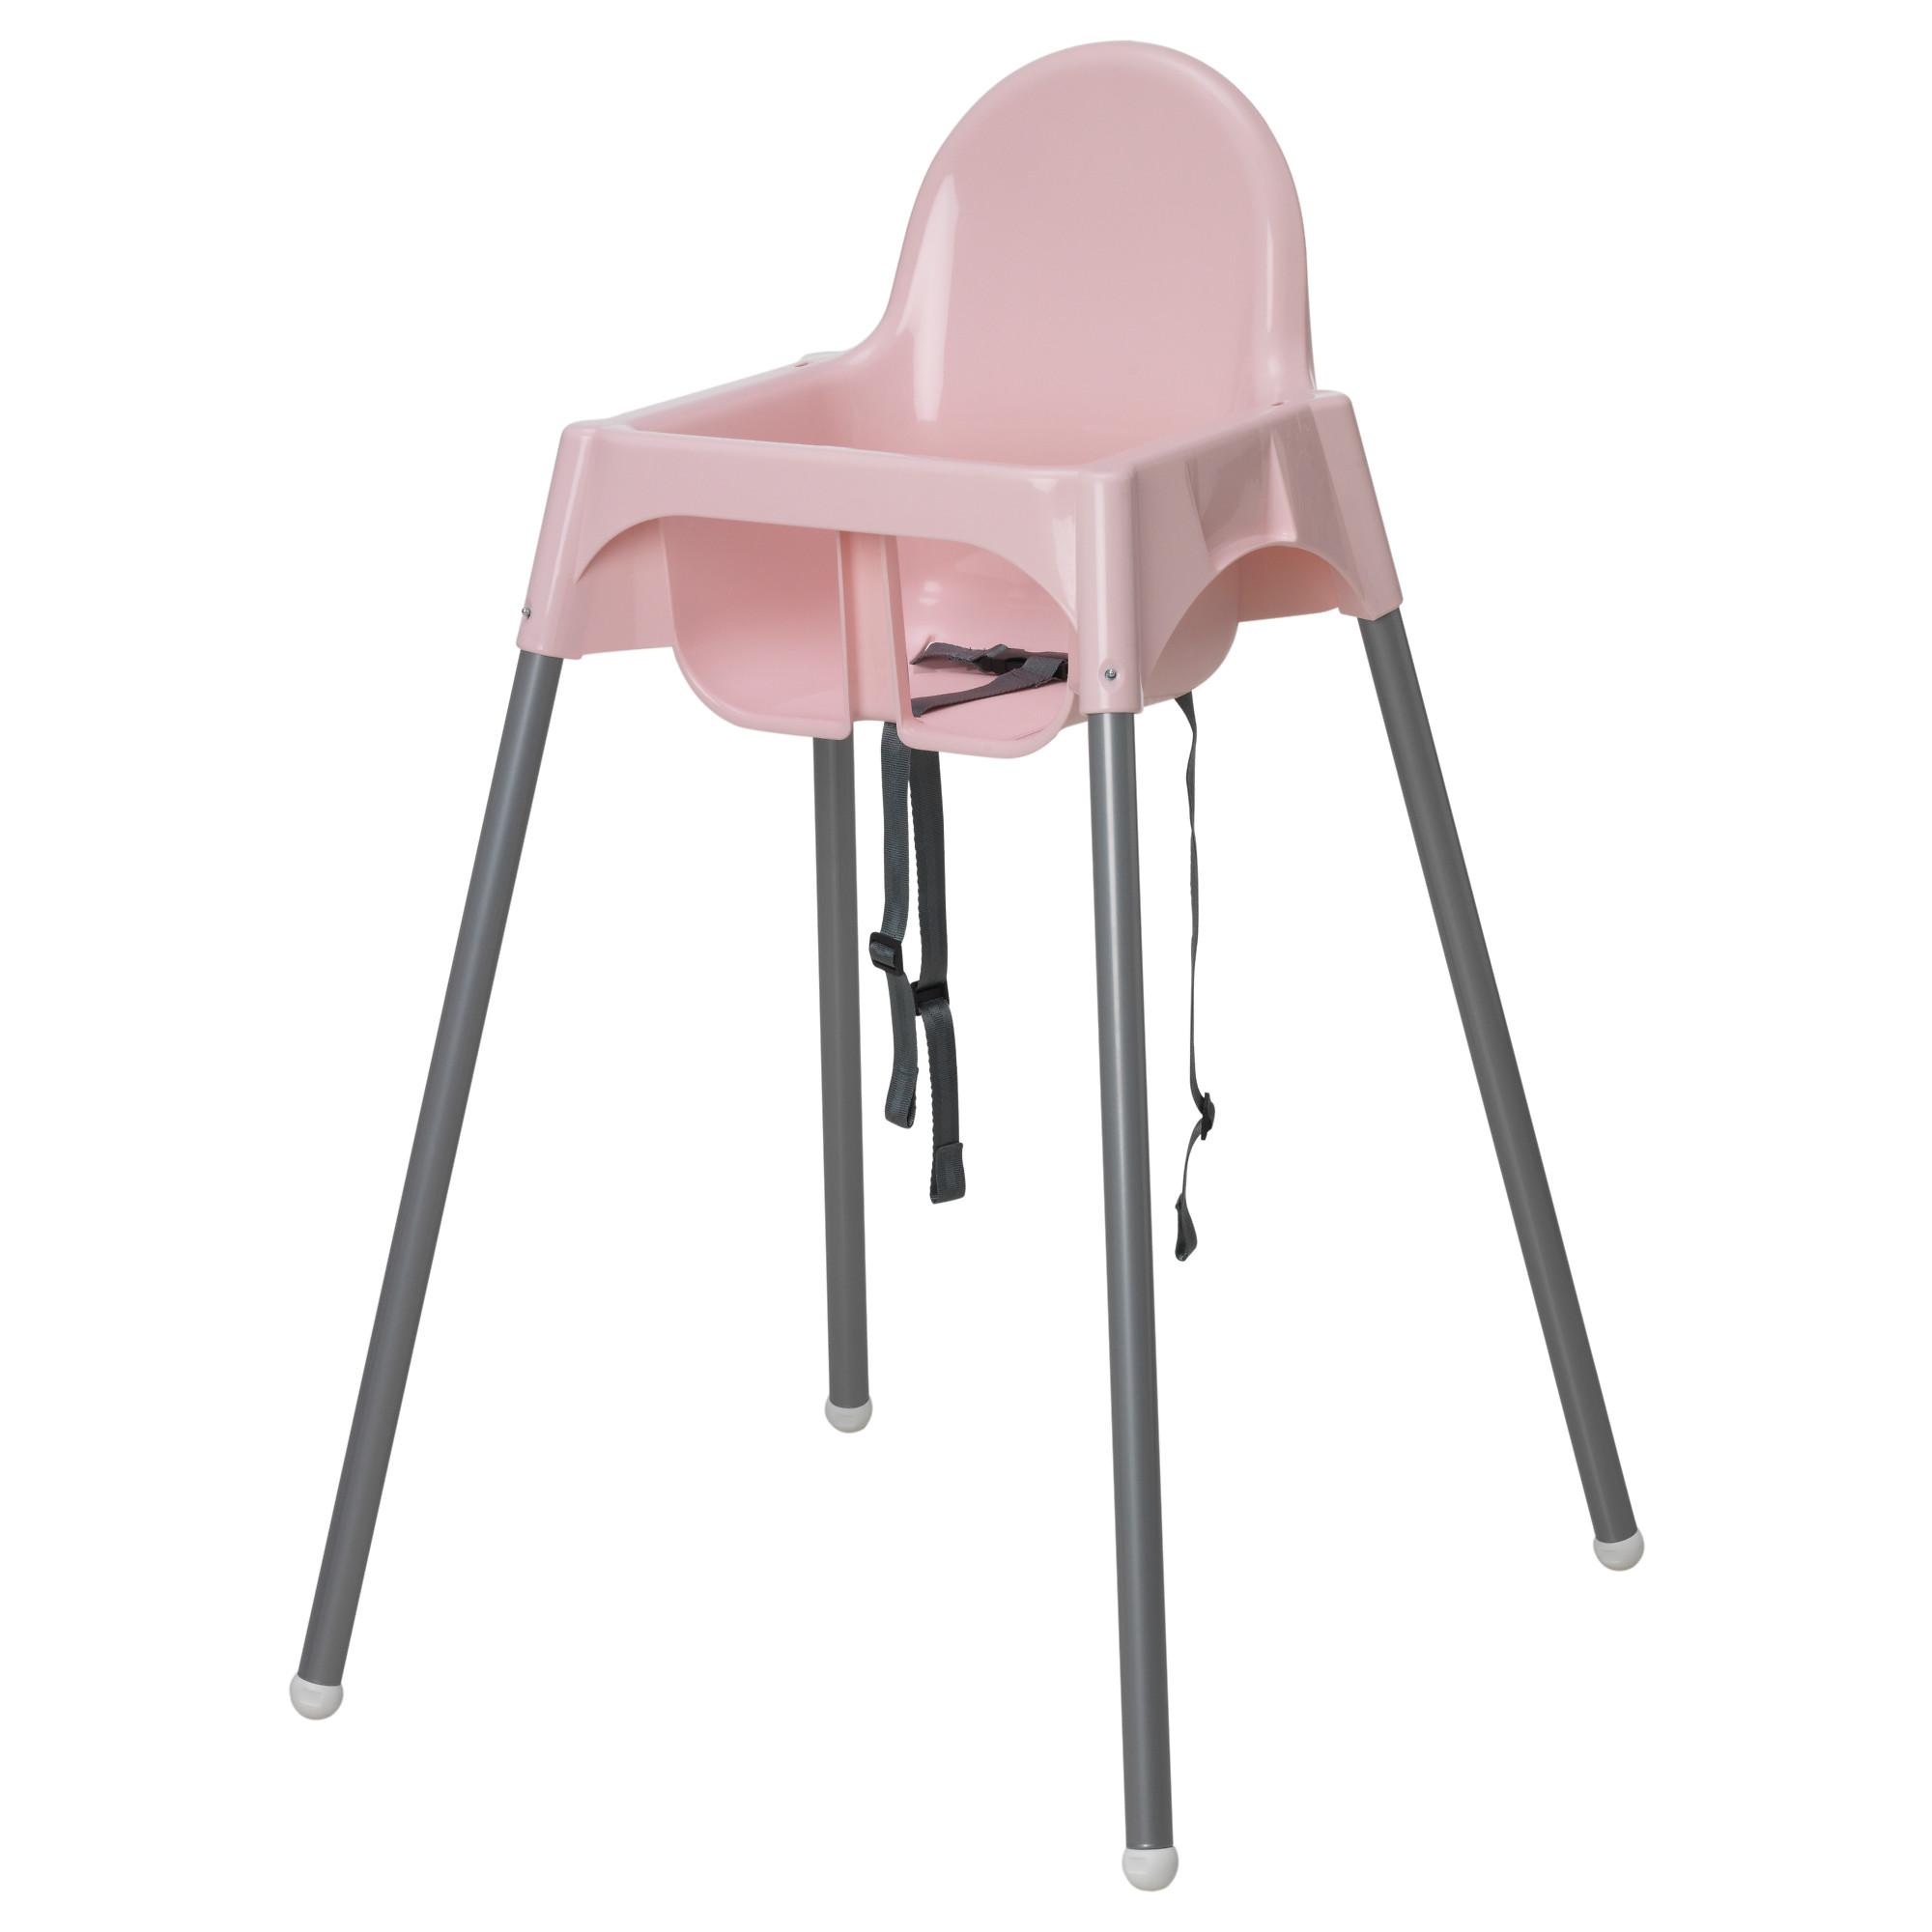 อิเกีย เก้าอี้นั่งทานอาหาร เก้าอี้สูง อันติลูป เก้าอี้ทานข้าวเด็กทรงสูง (มีสี ขาว /ฟ้า/ชมพู) ไม่มีถาด (Untiloop High Chair)